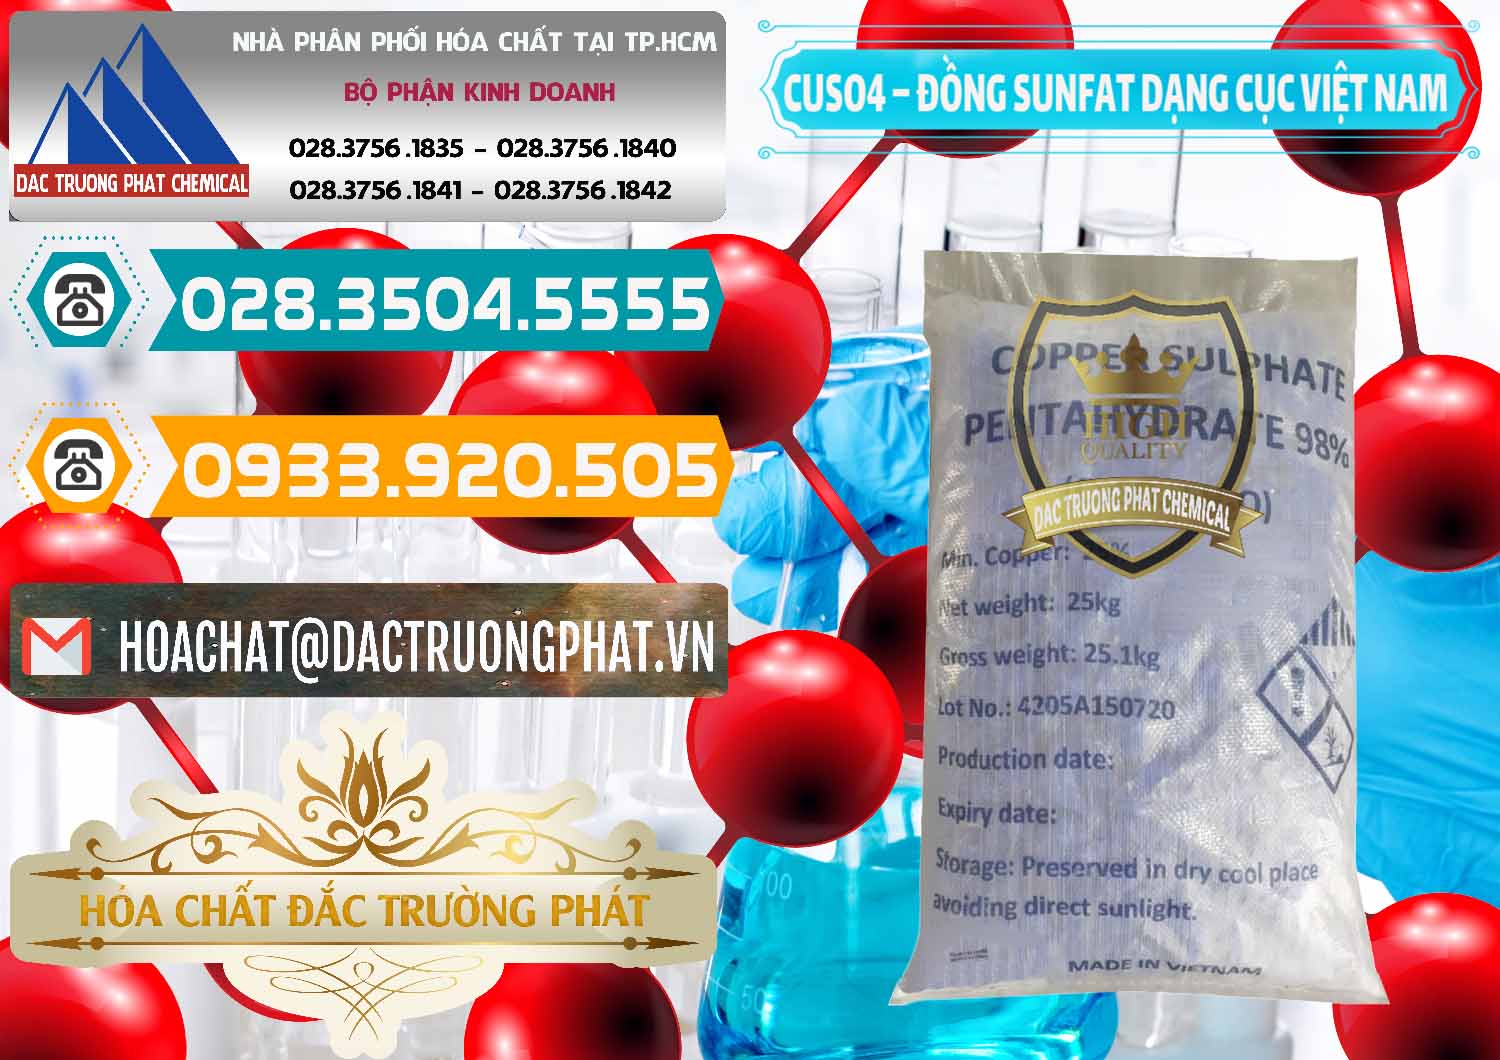 Cty chuyên phân phối _ bán CUSO4 – Đồng Sunfat Dạng Cục Việt Nam - 0303 - Cty kinh doanh & phân phối hóa chất tại TP.HCM - congtyhoachat.vn